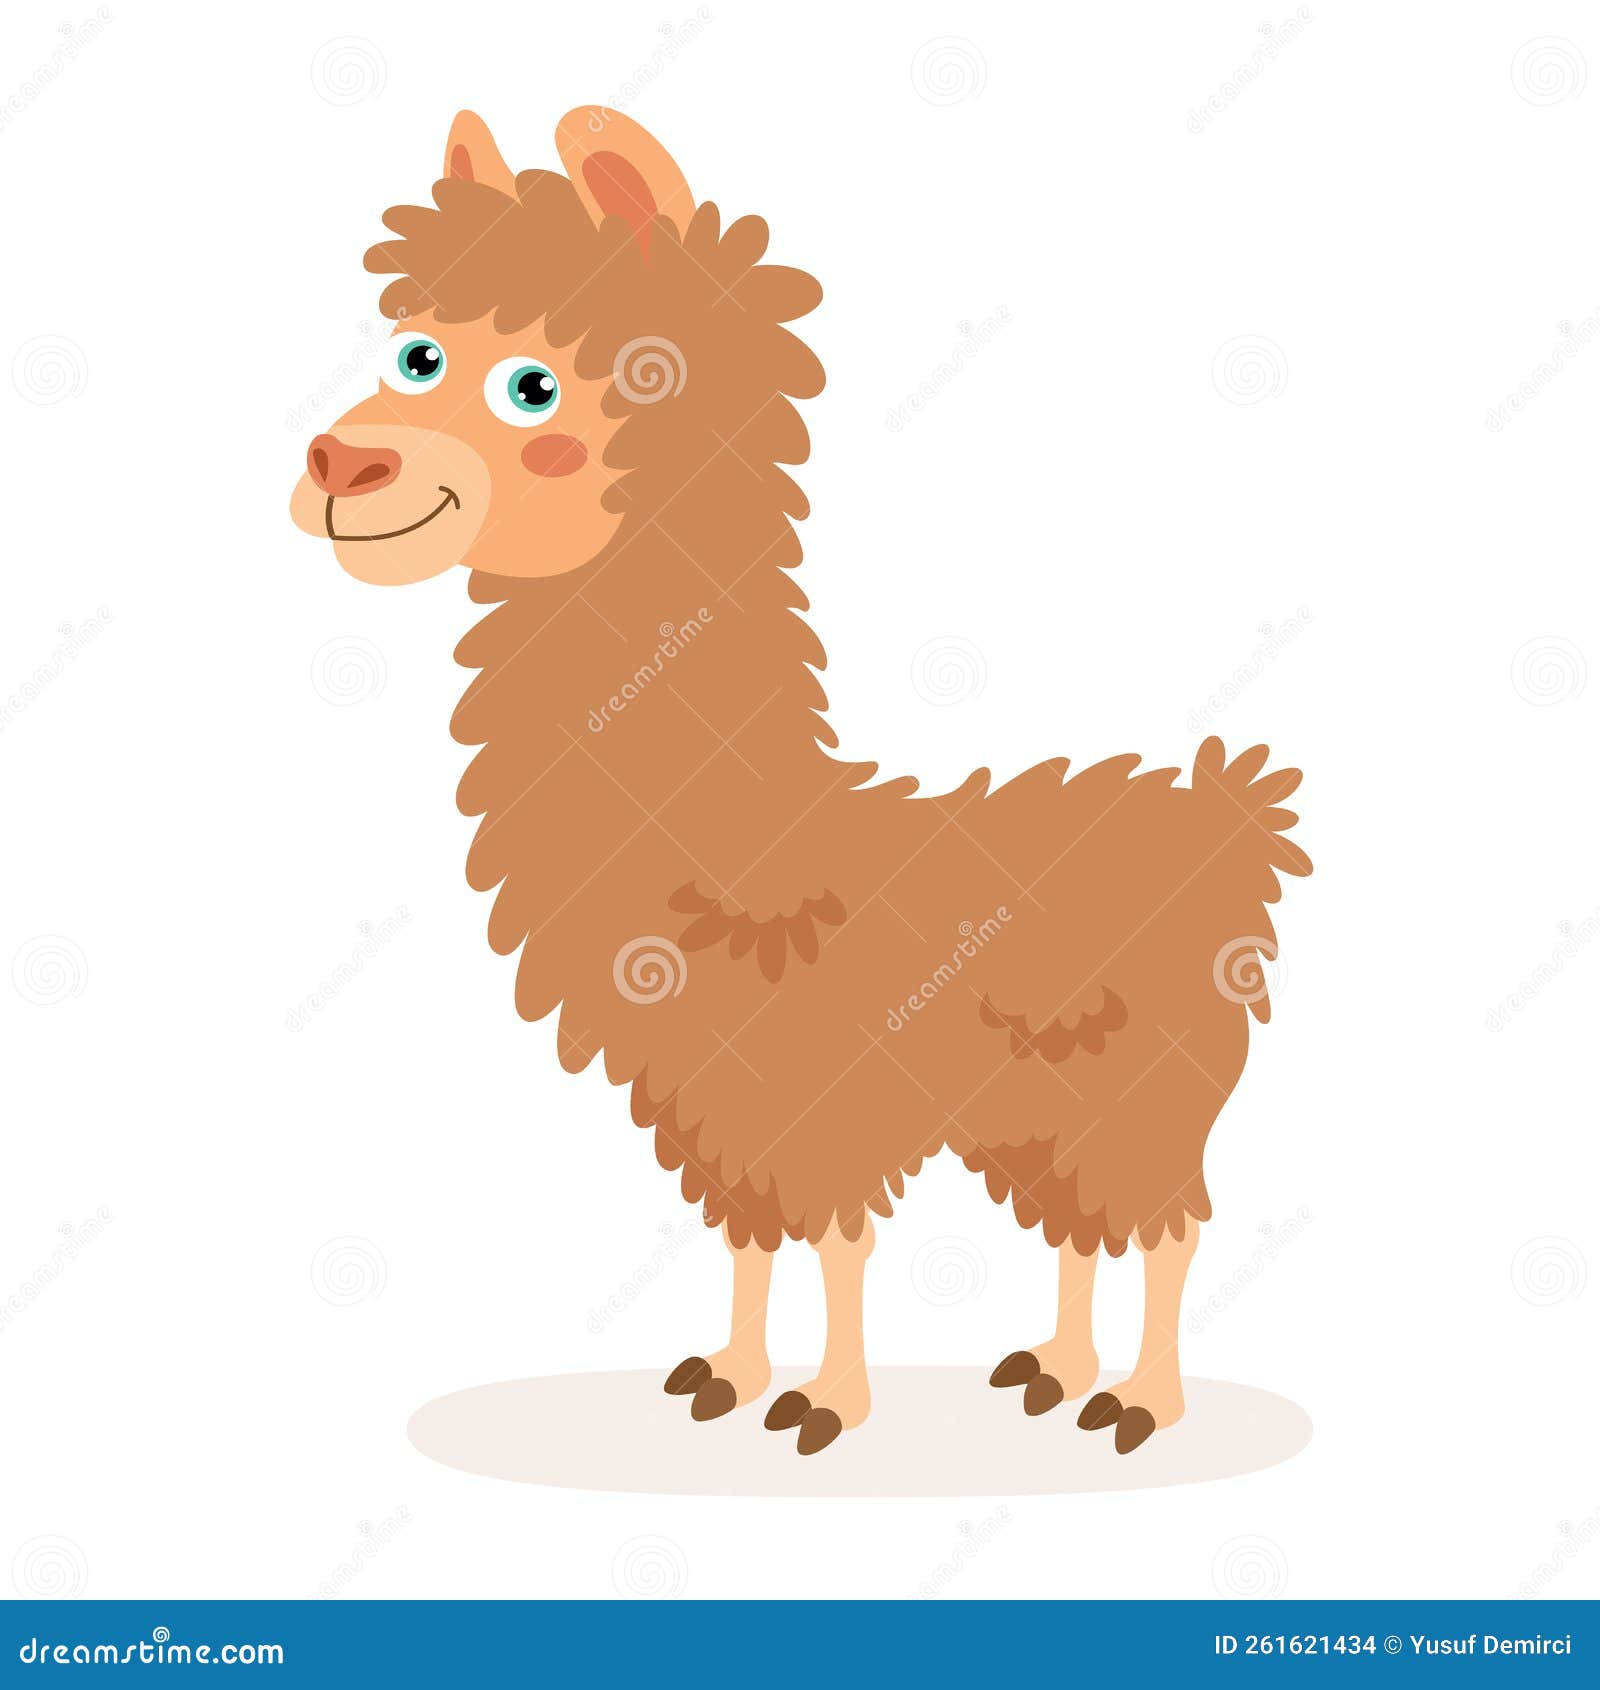 Cartoon Illustration of a Llama Stock Illustration - Illustration of ...